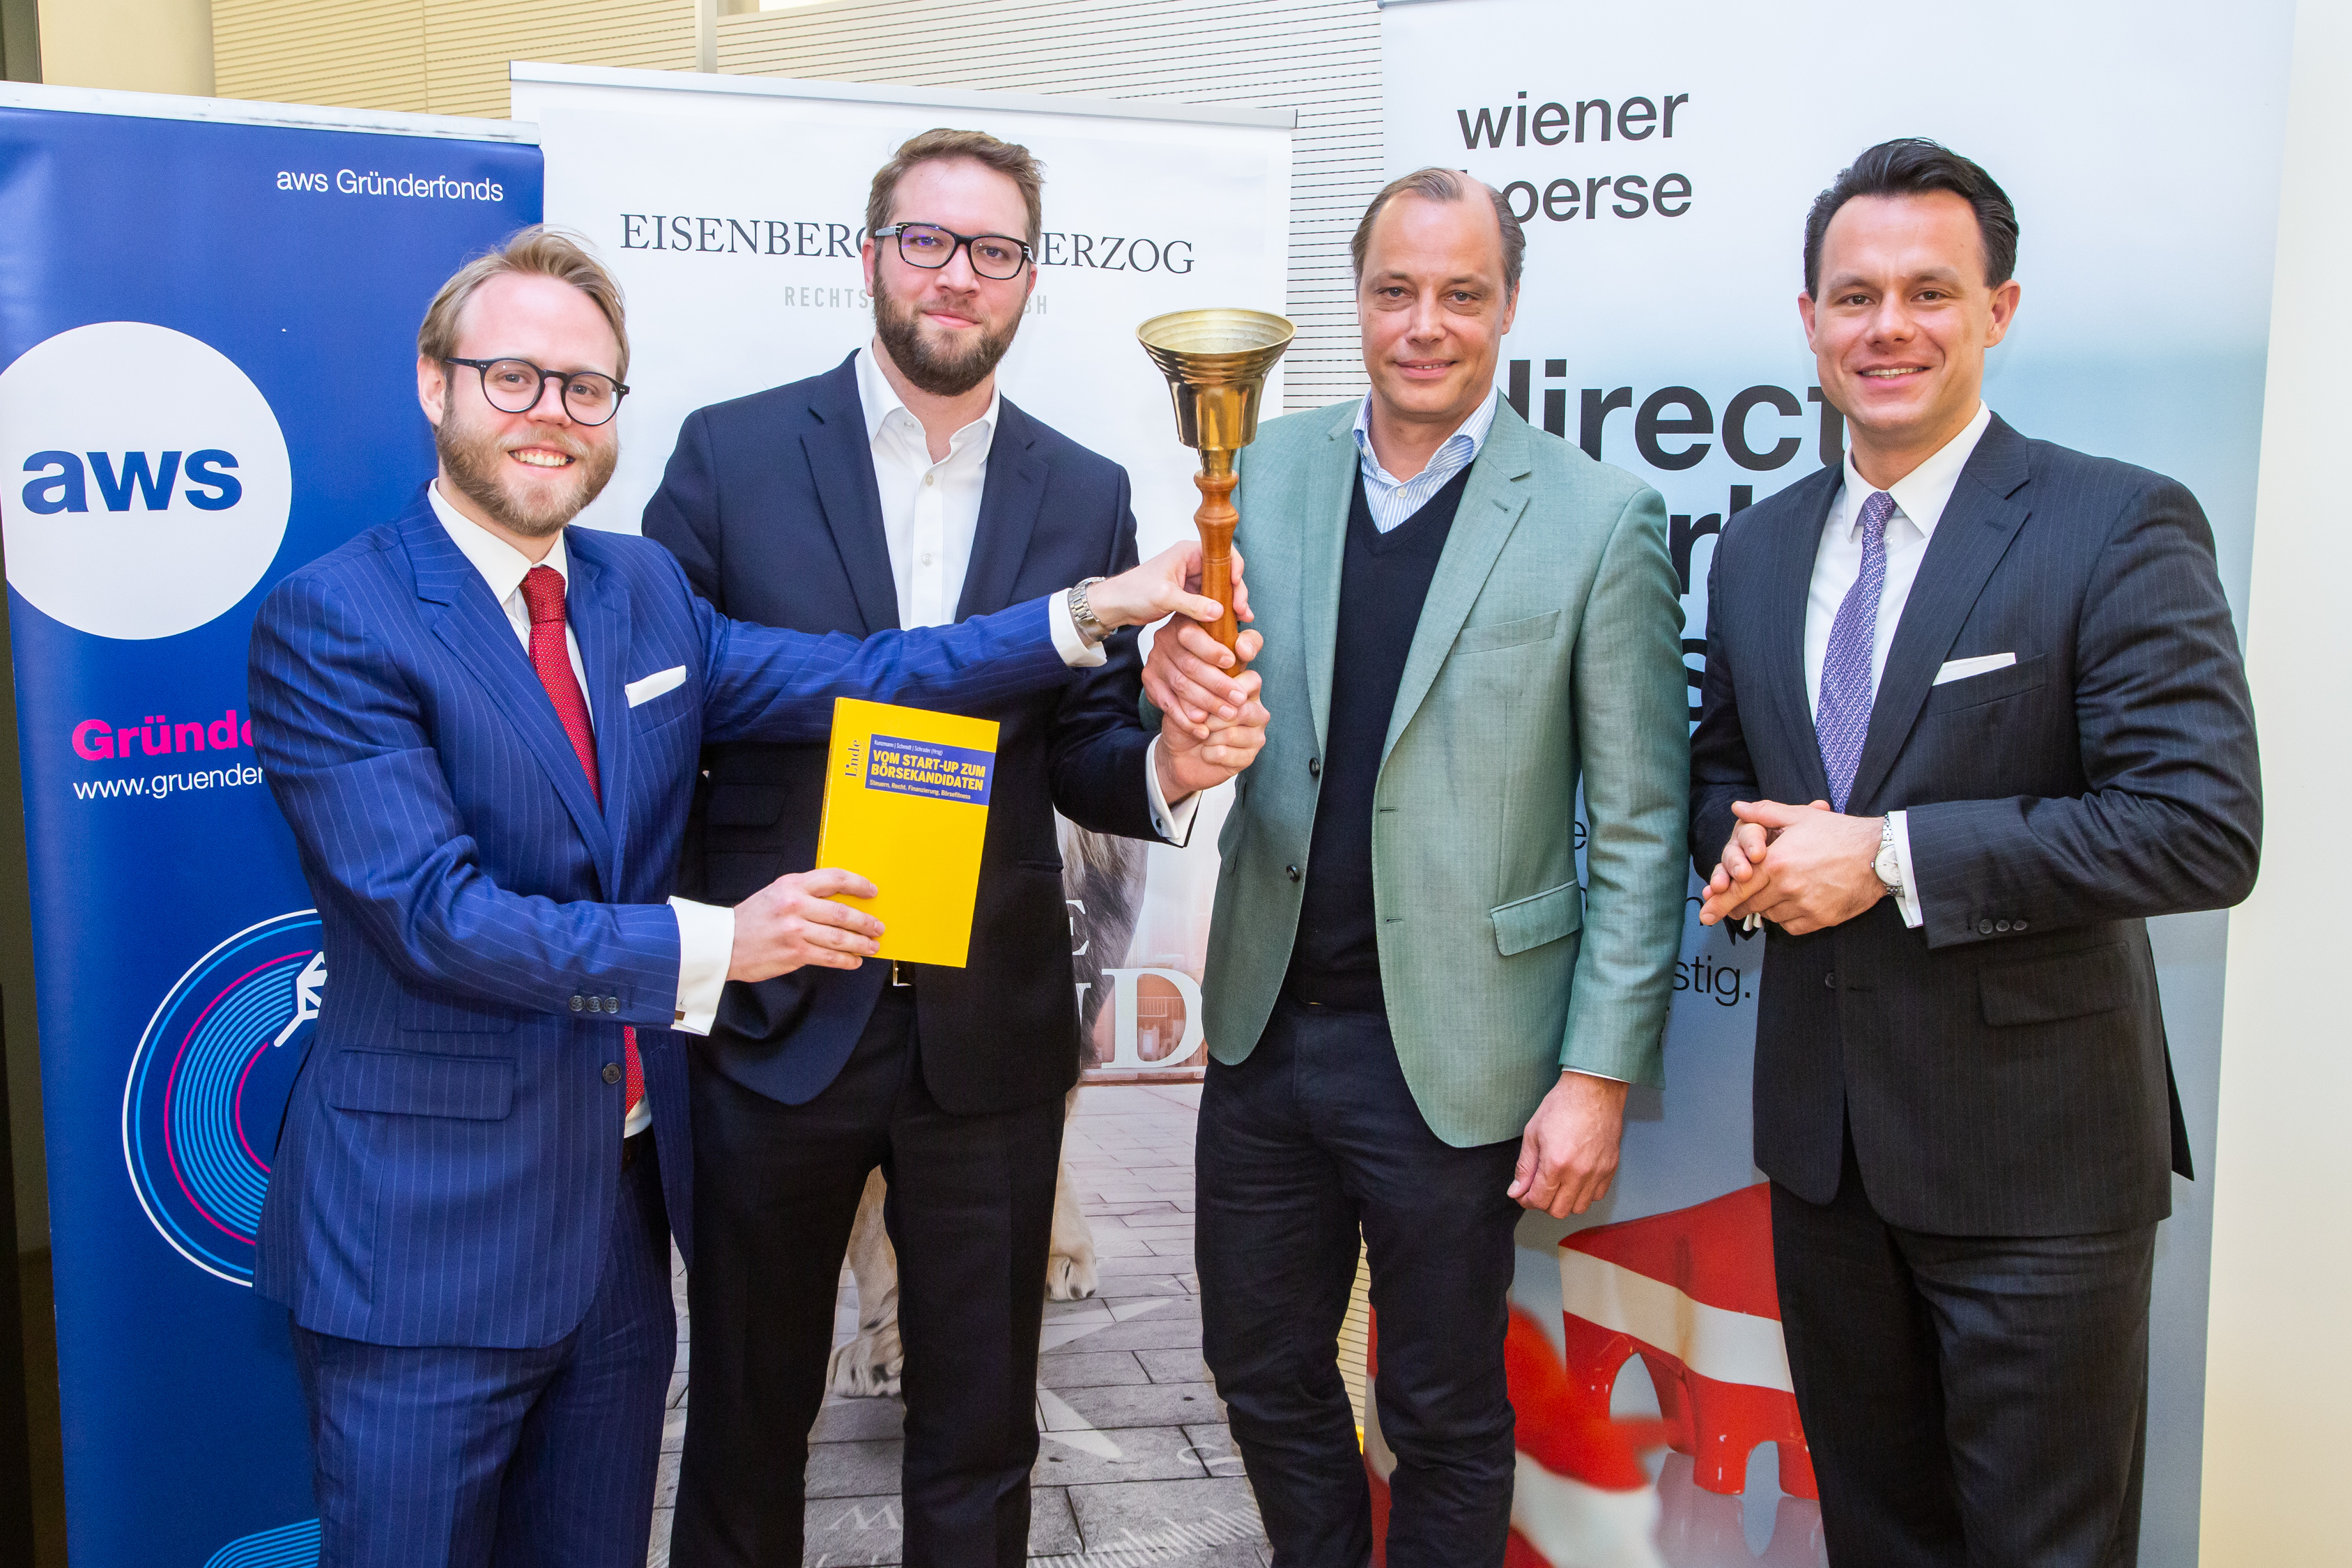 Foto: Die Herausgeber des Ratgebers, Josef Schmidt, Philipp Schrader und Ralf Kunzmann, gemeinsam mit dem Börsechef Christoph Boschan